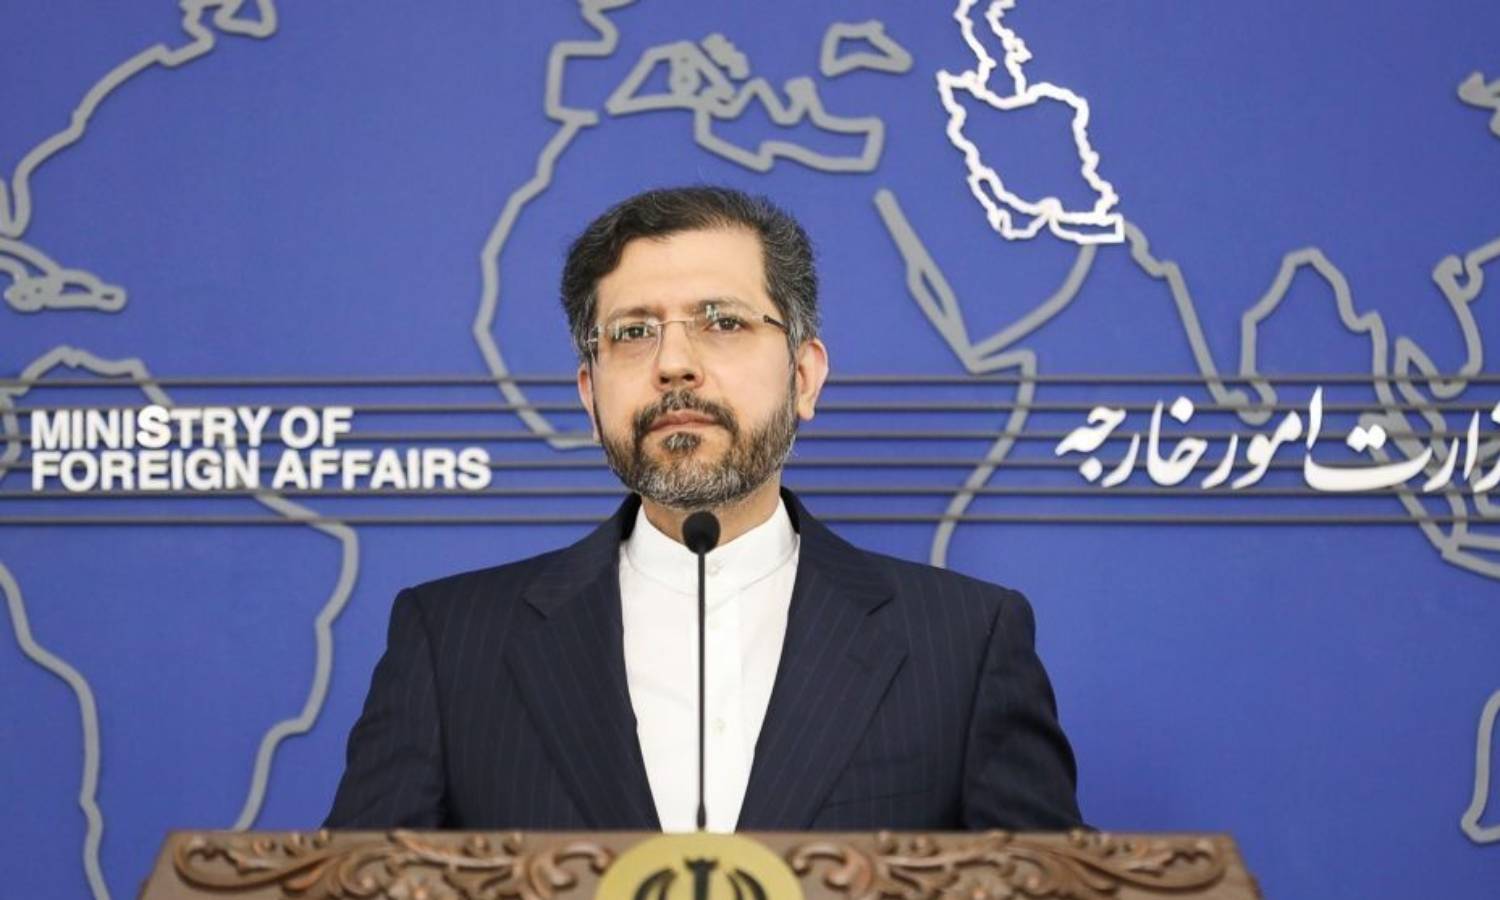 المتحدث باسم وزارة الخارجية الإيرانية، سعيد خطيب زاده (وكالة إرنا)